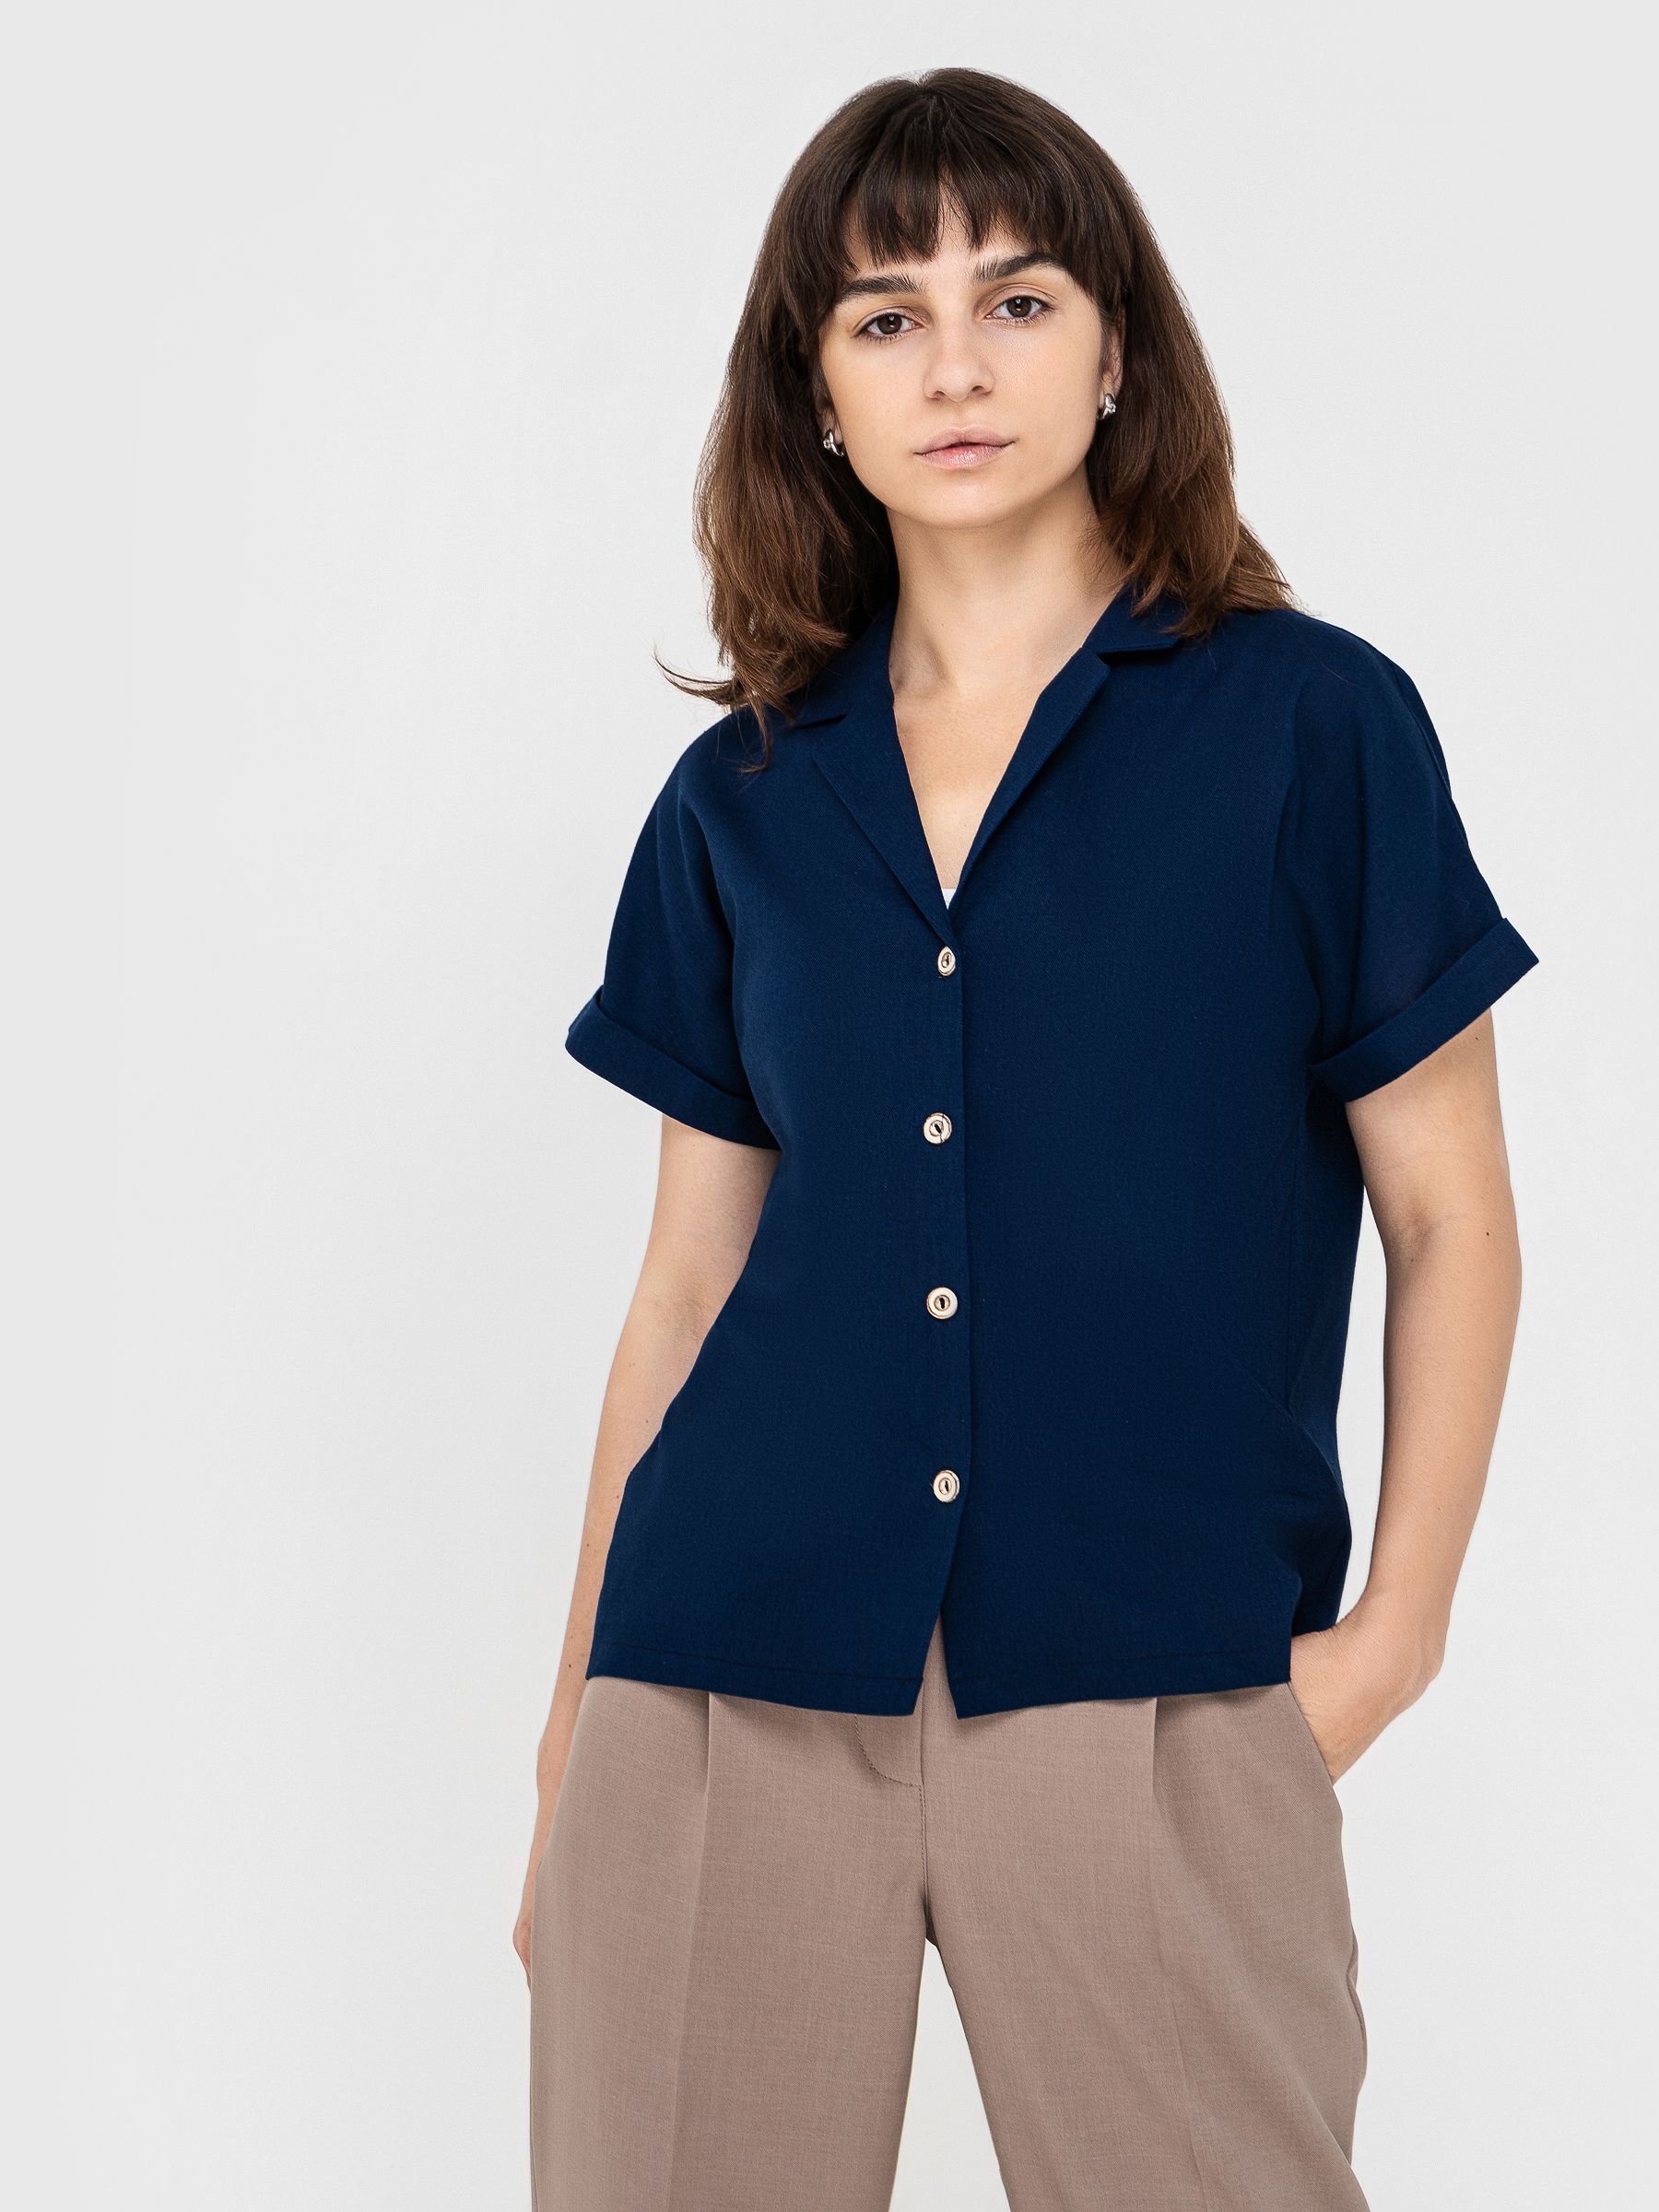 Рубашка женская AM One 6019/5 синяя 44 RU